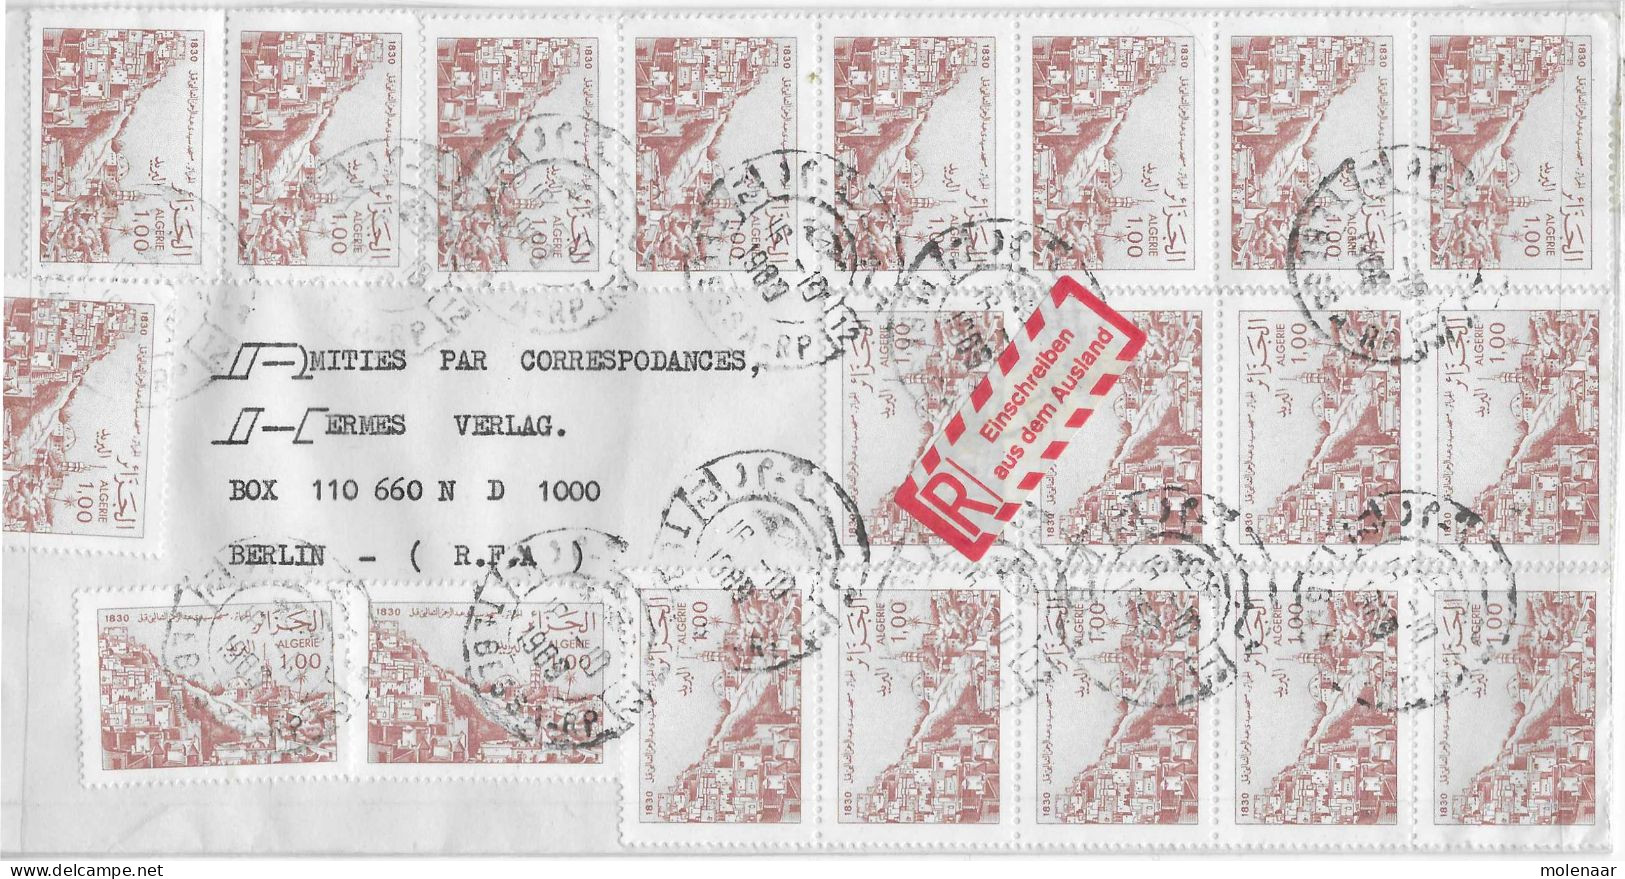 Postzegels > Afrika > Algerije (1962-...)>aangetekende Luchtpostbrief  Met 20 Postzegels  (17801) - Algerien (1962-...)